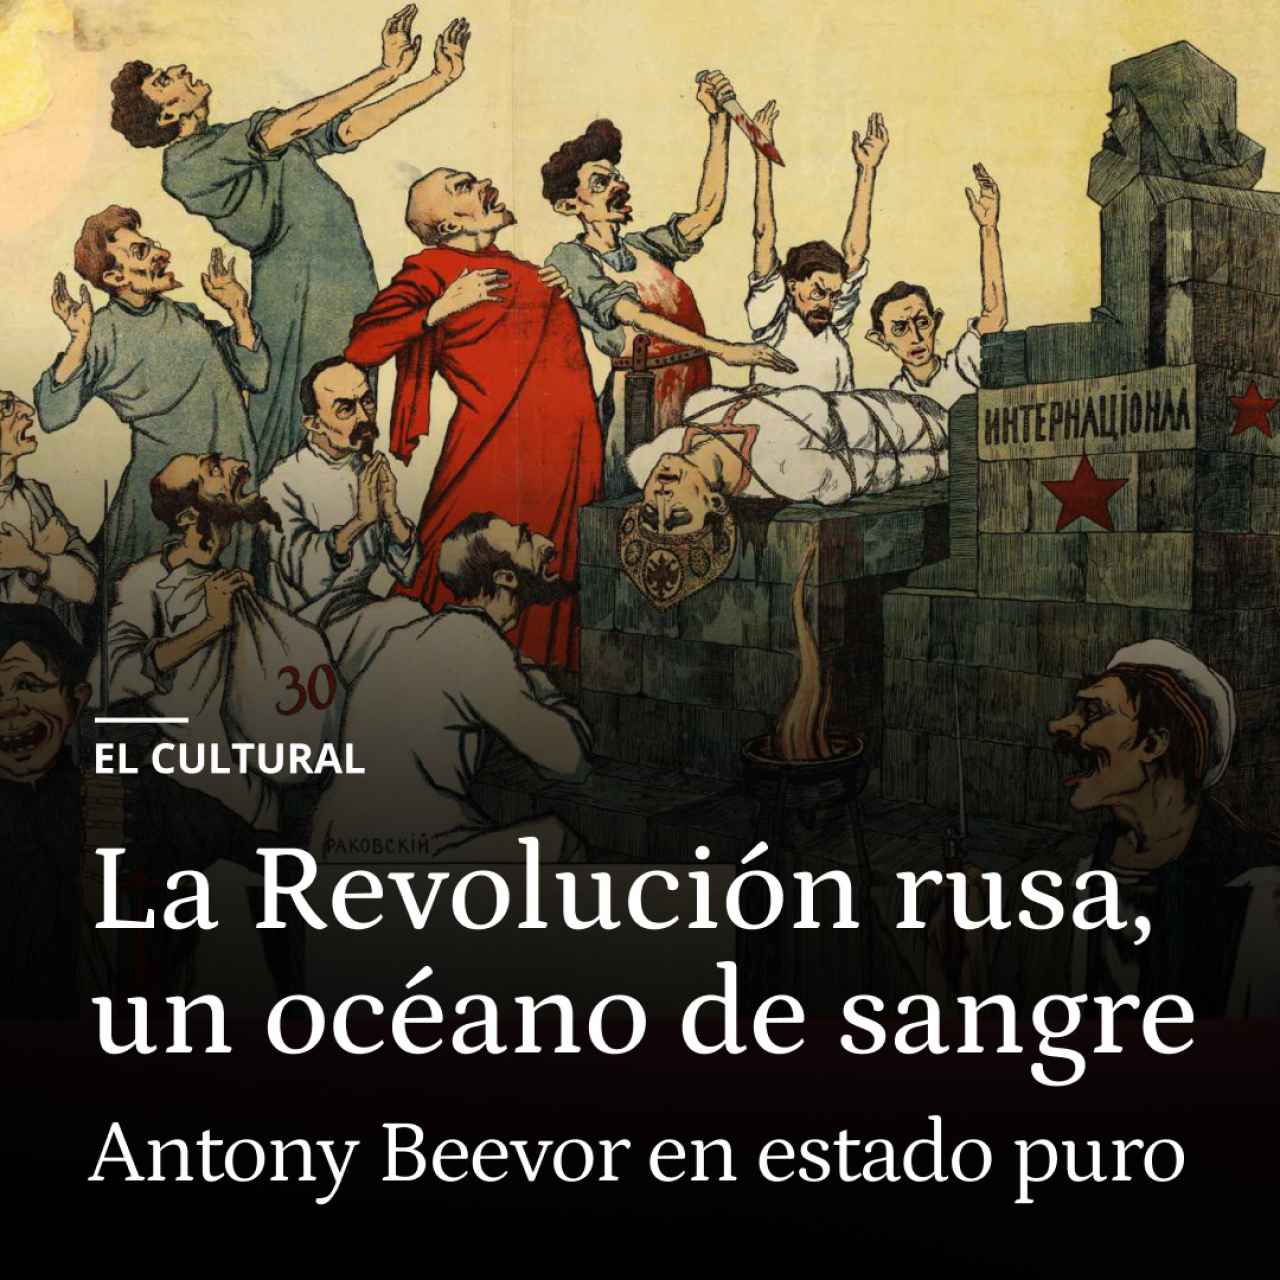 Antony Beevor y la Revolución rusa: un océano de sangre